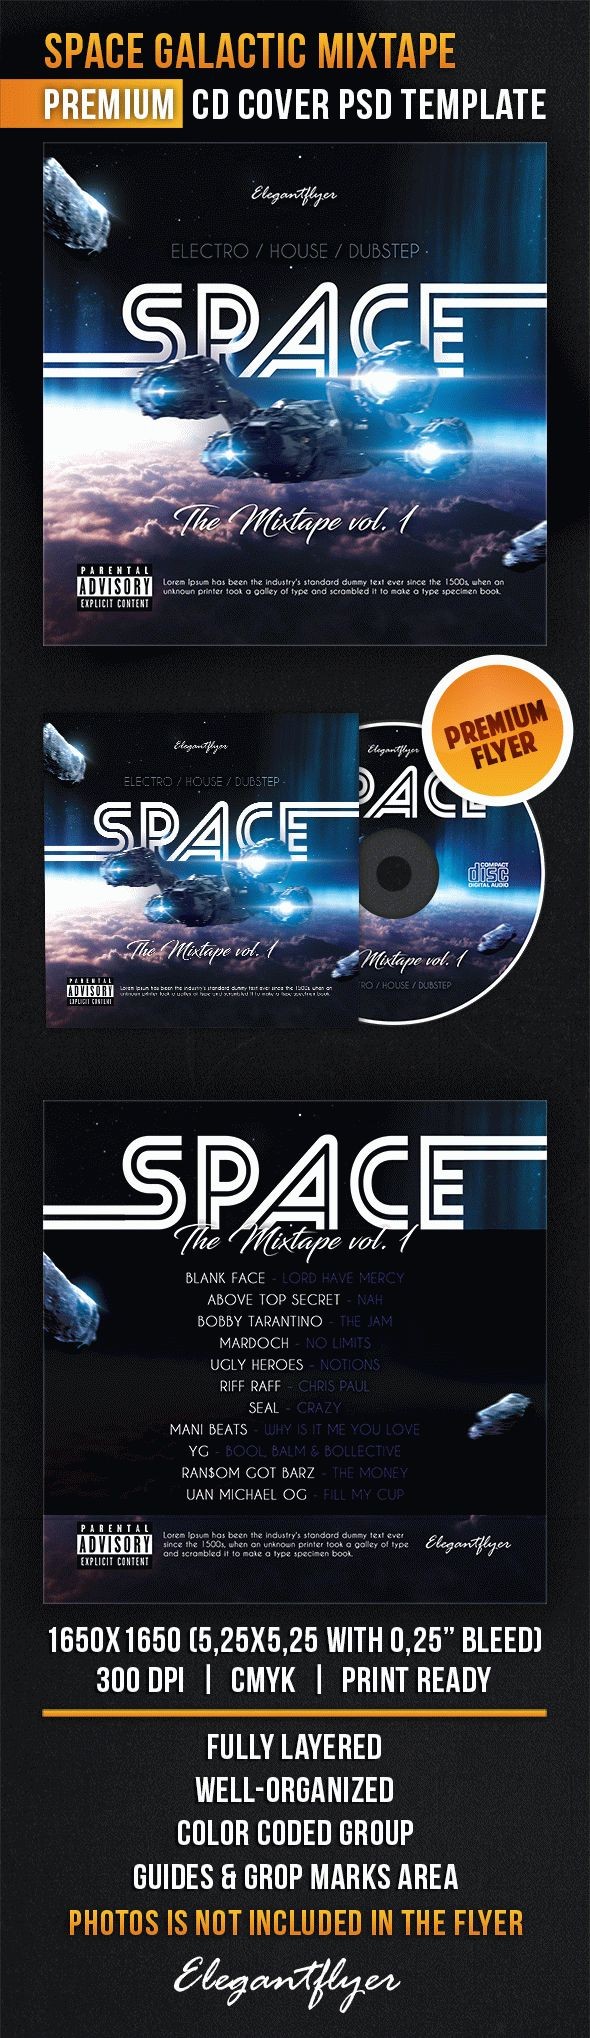 Mélange de mixtape de l'espace galactique by ElegantFlyer